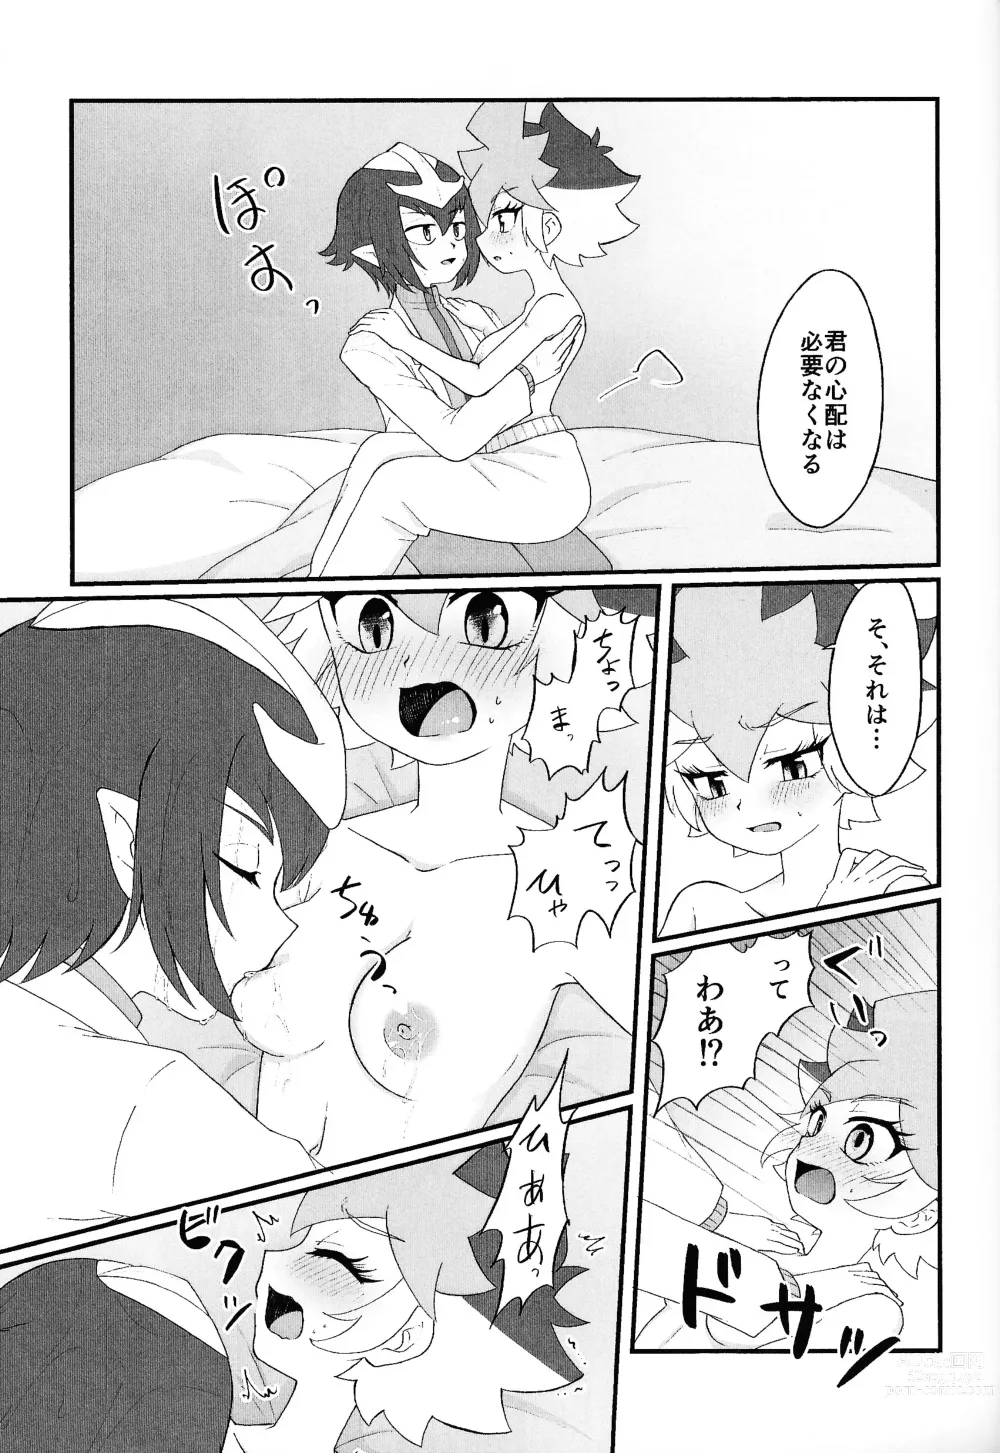 Page 24 of doujinshi Pandoranohako ka kindan no kajitsu ka